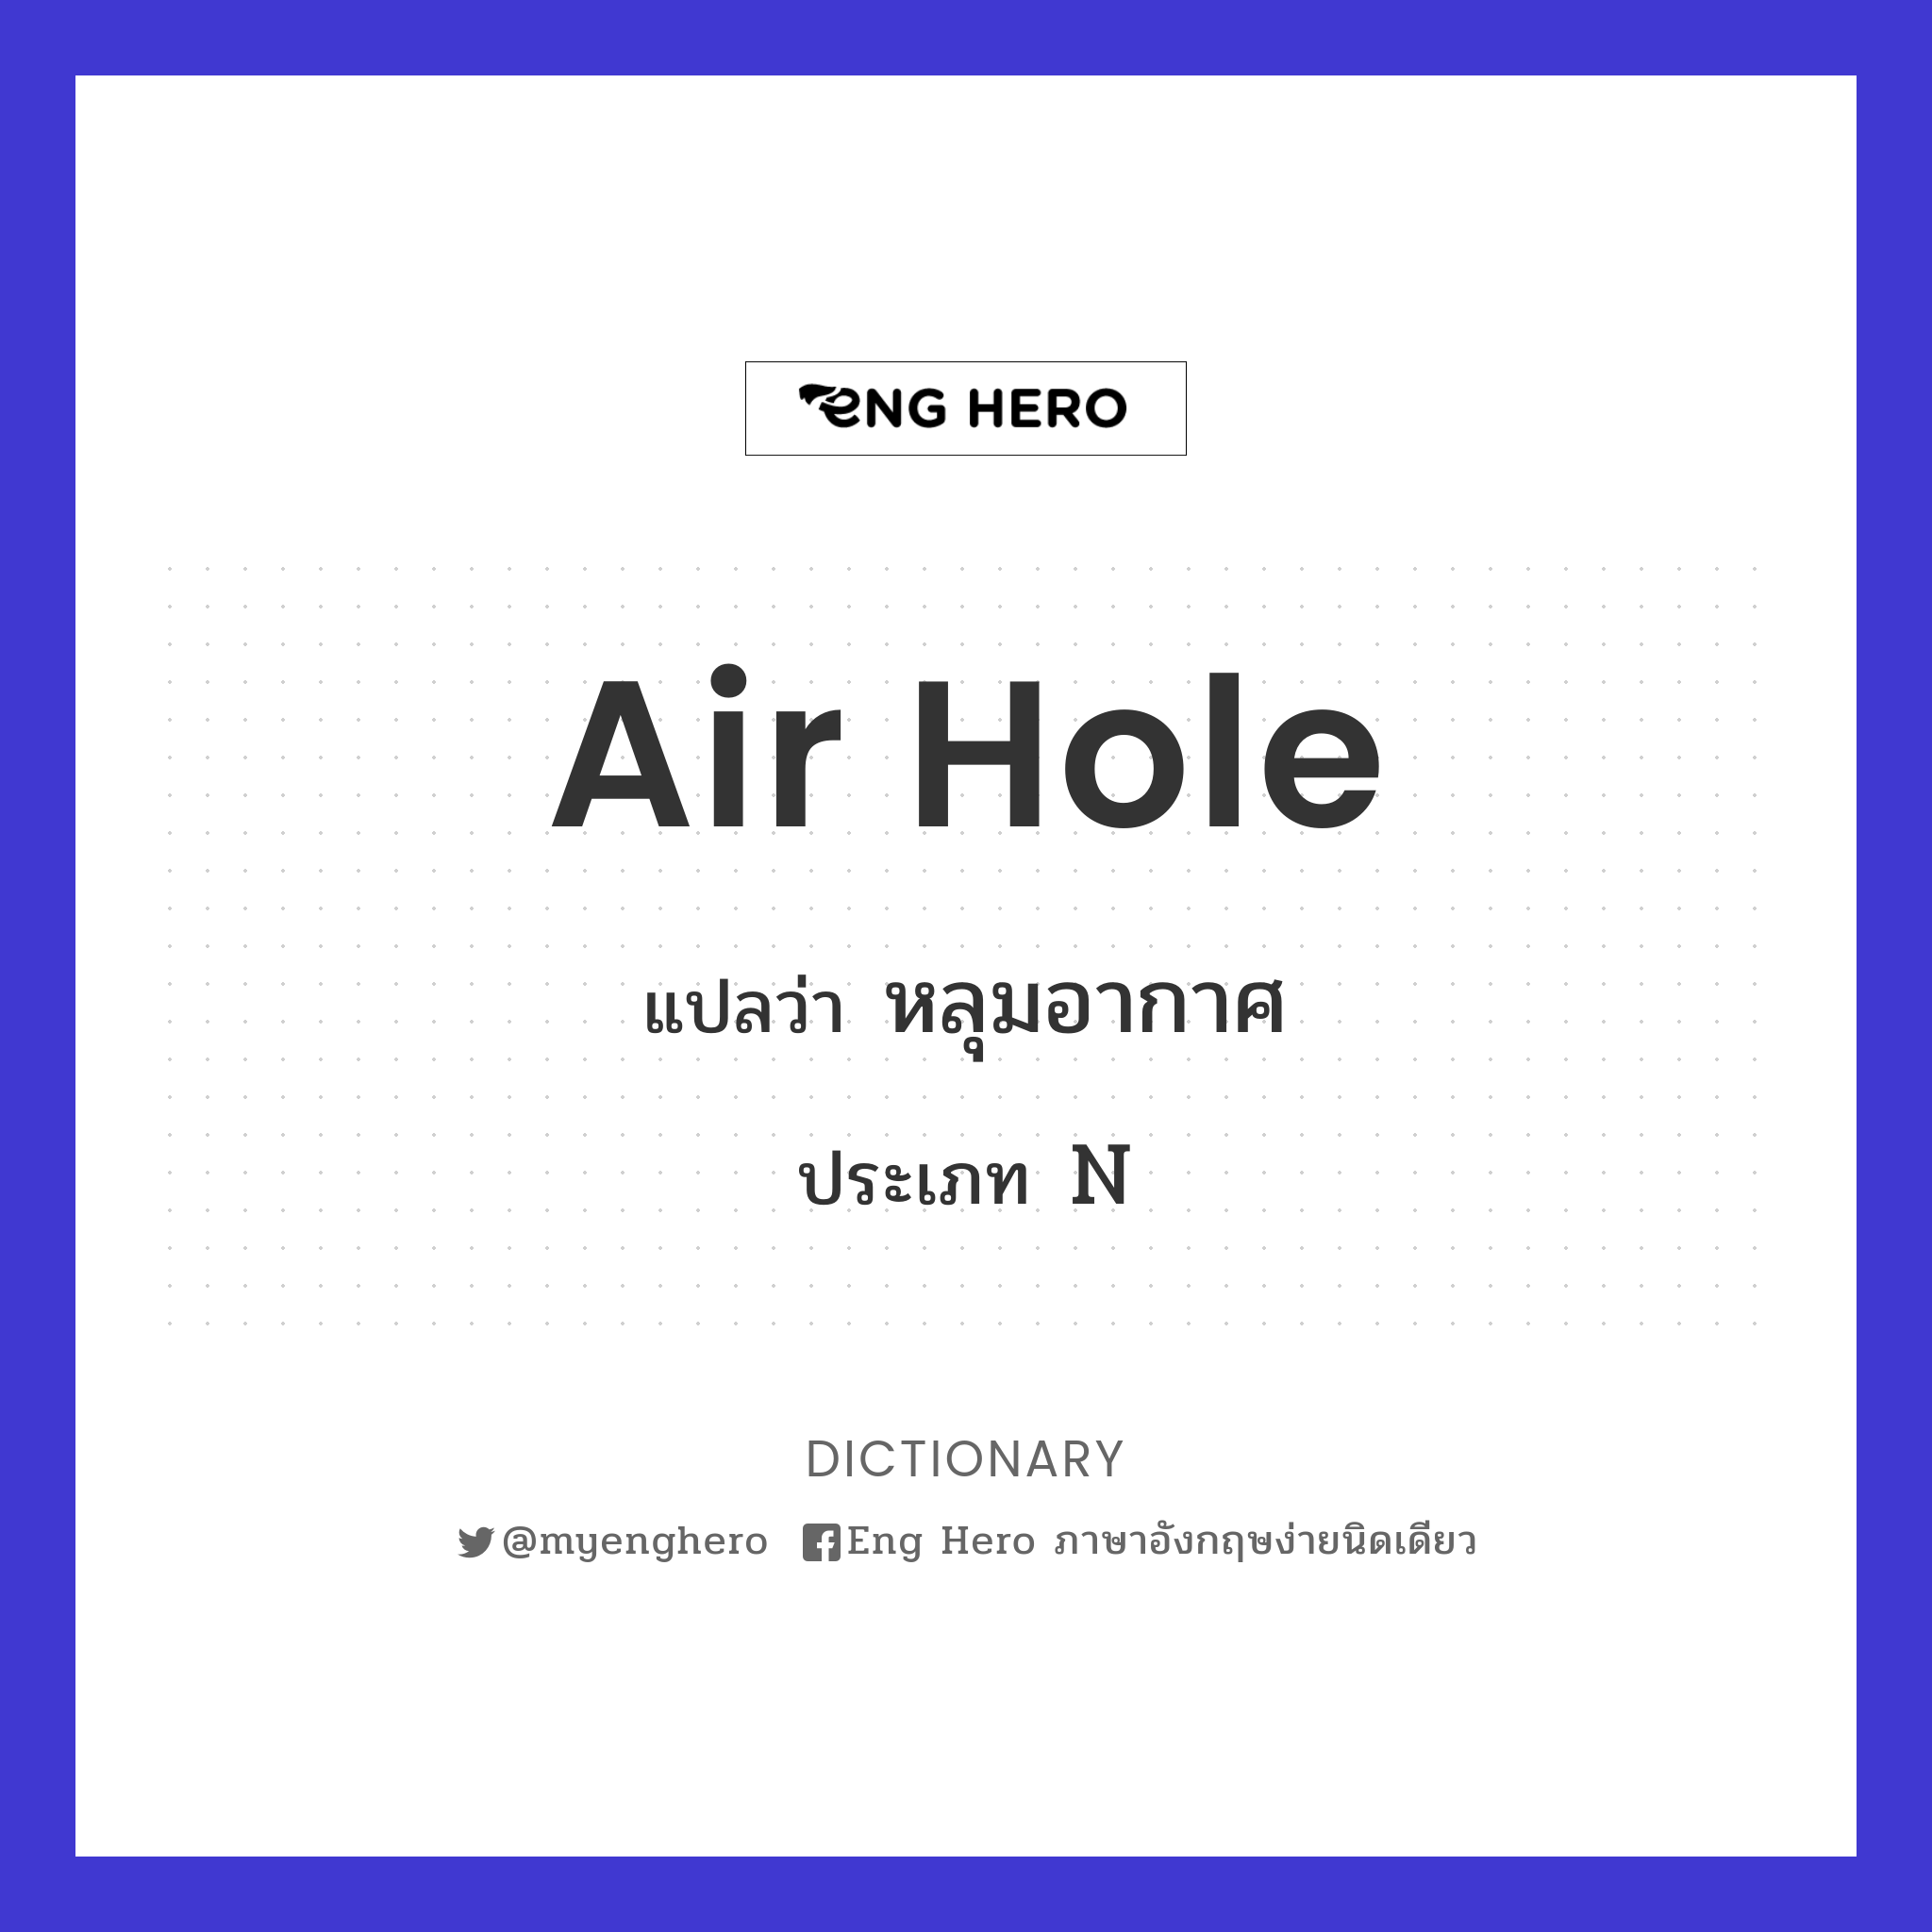 air hole